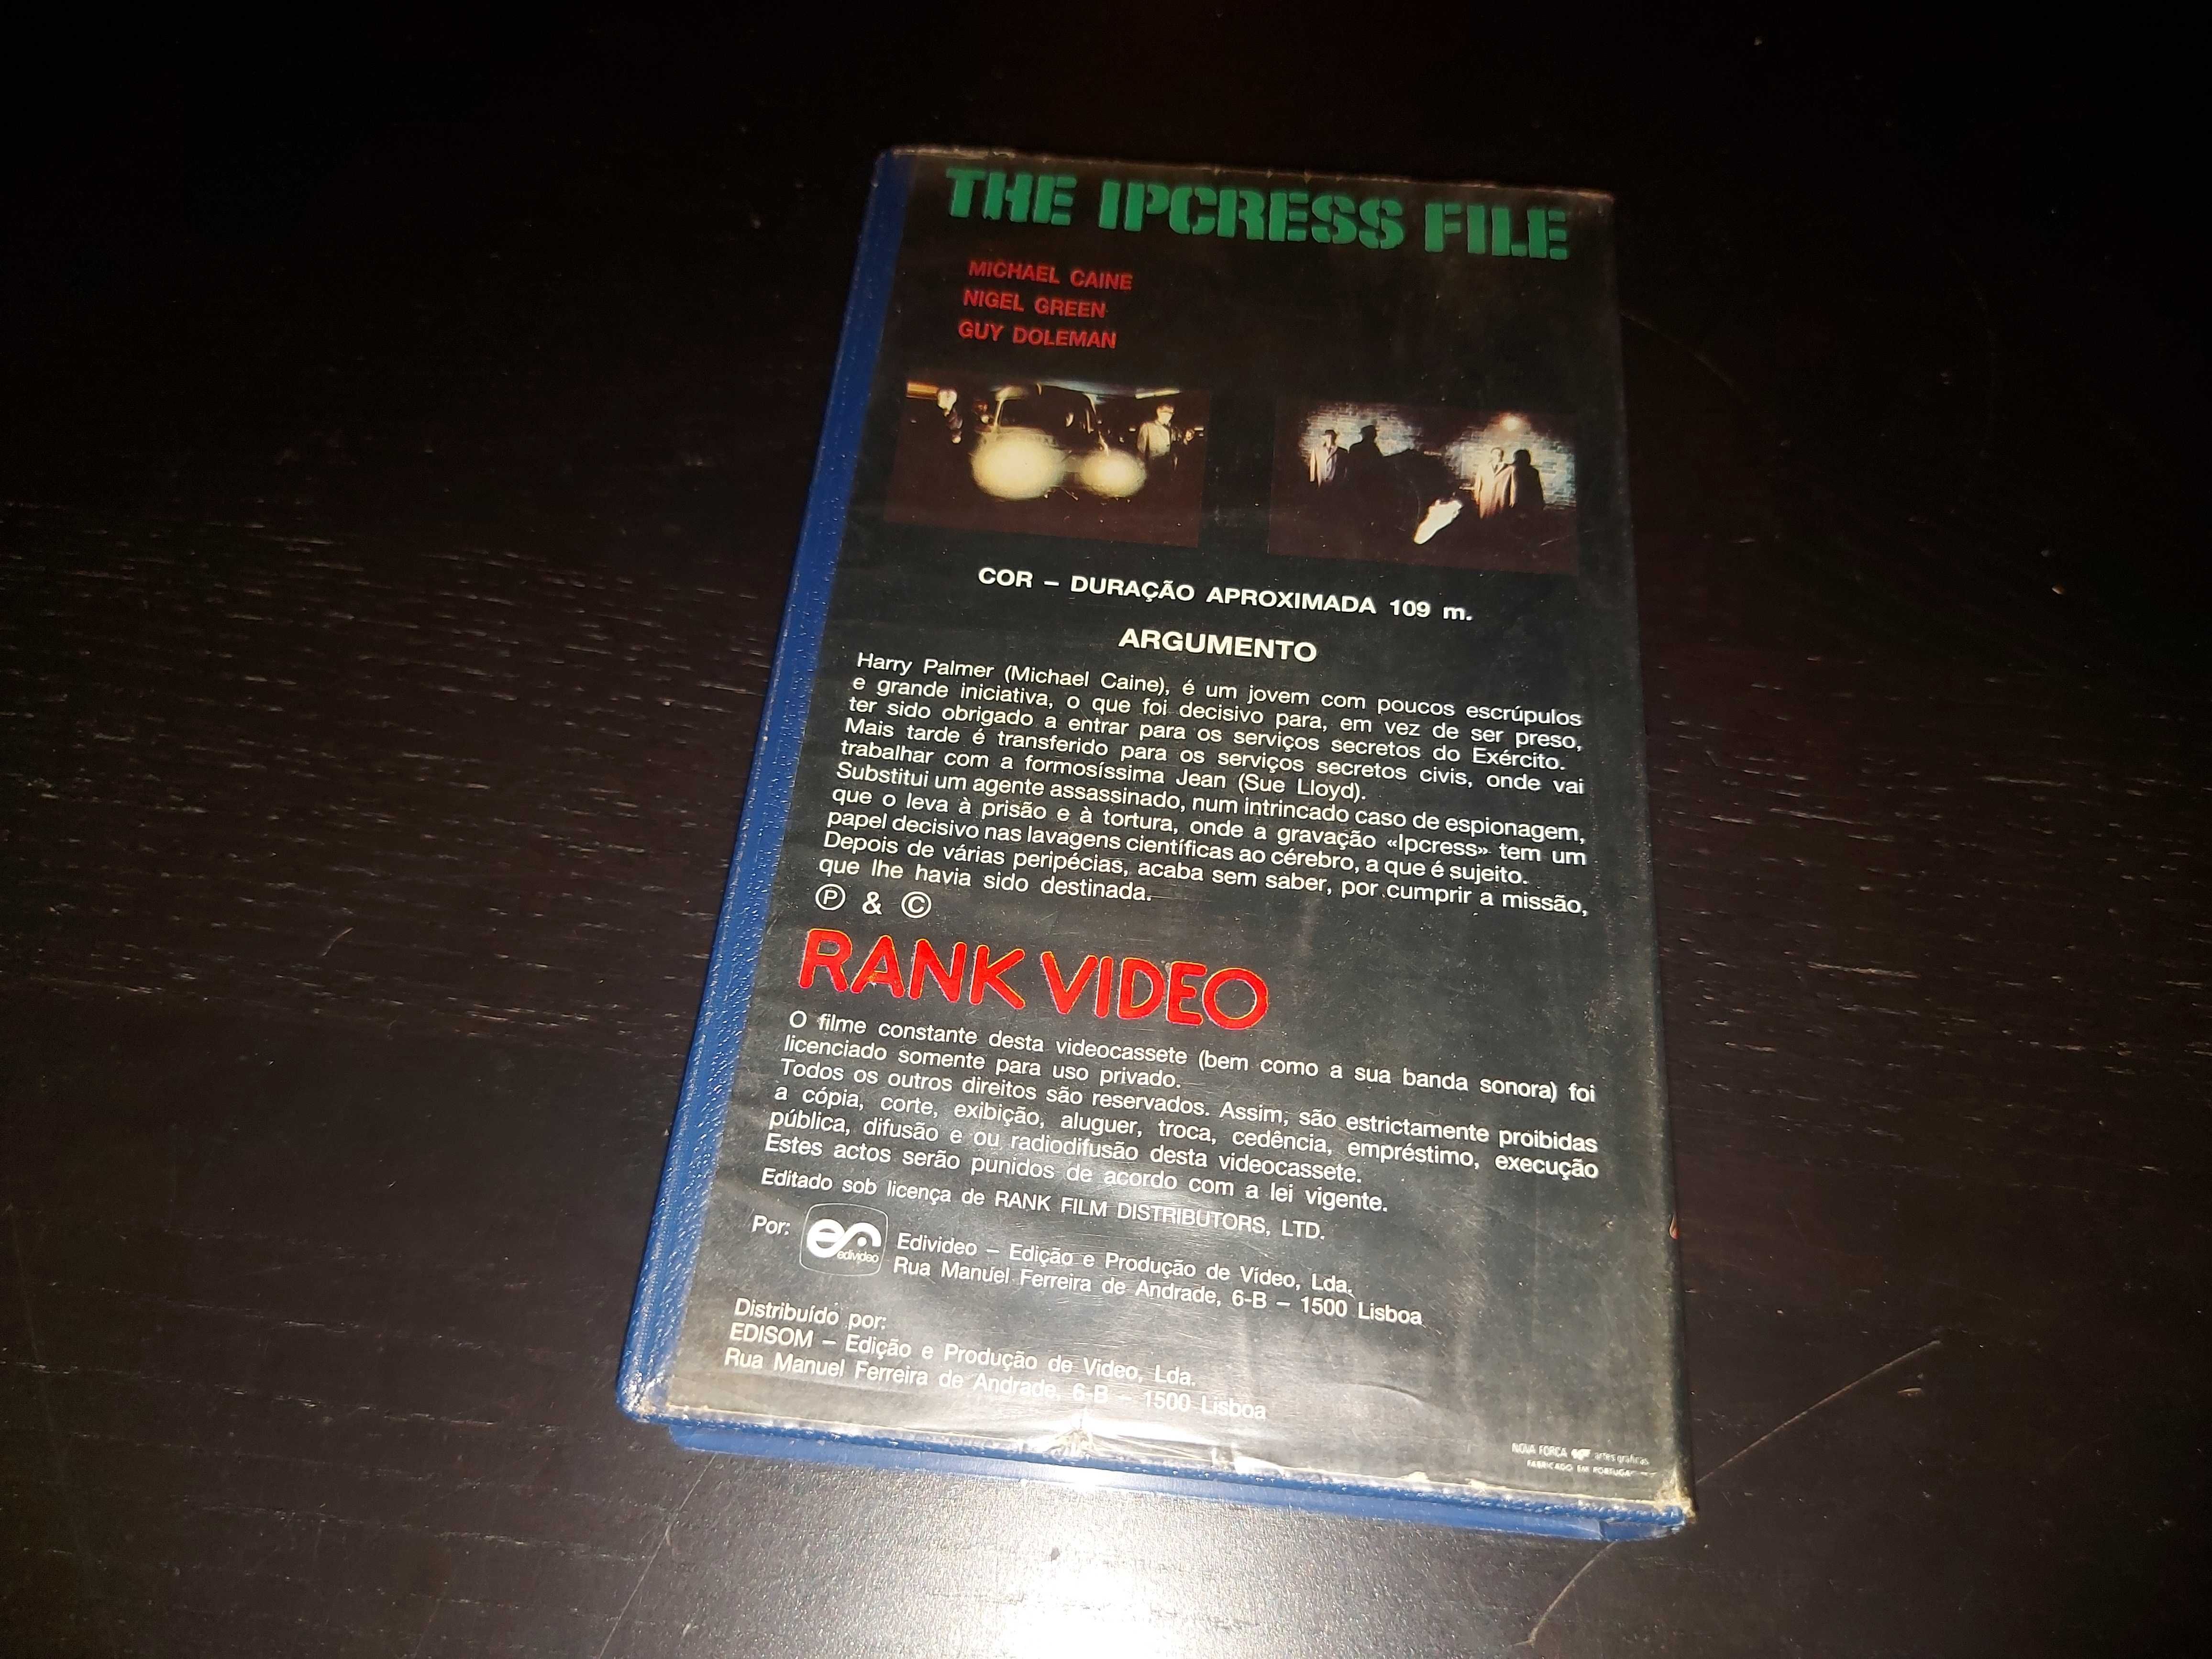 The Ipcress File - filme em vhs - edição de 1985! com Michael Caine